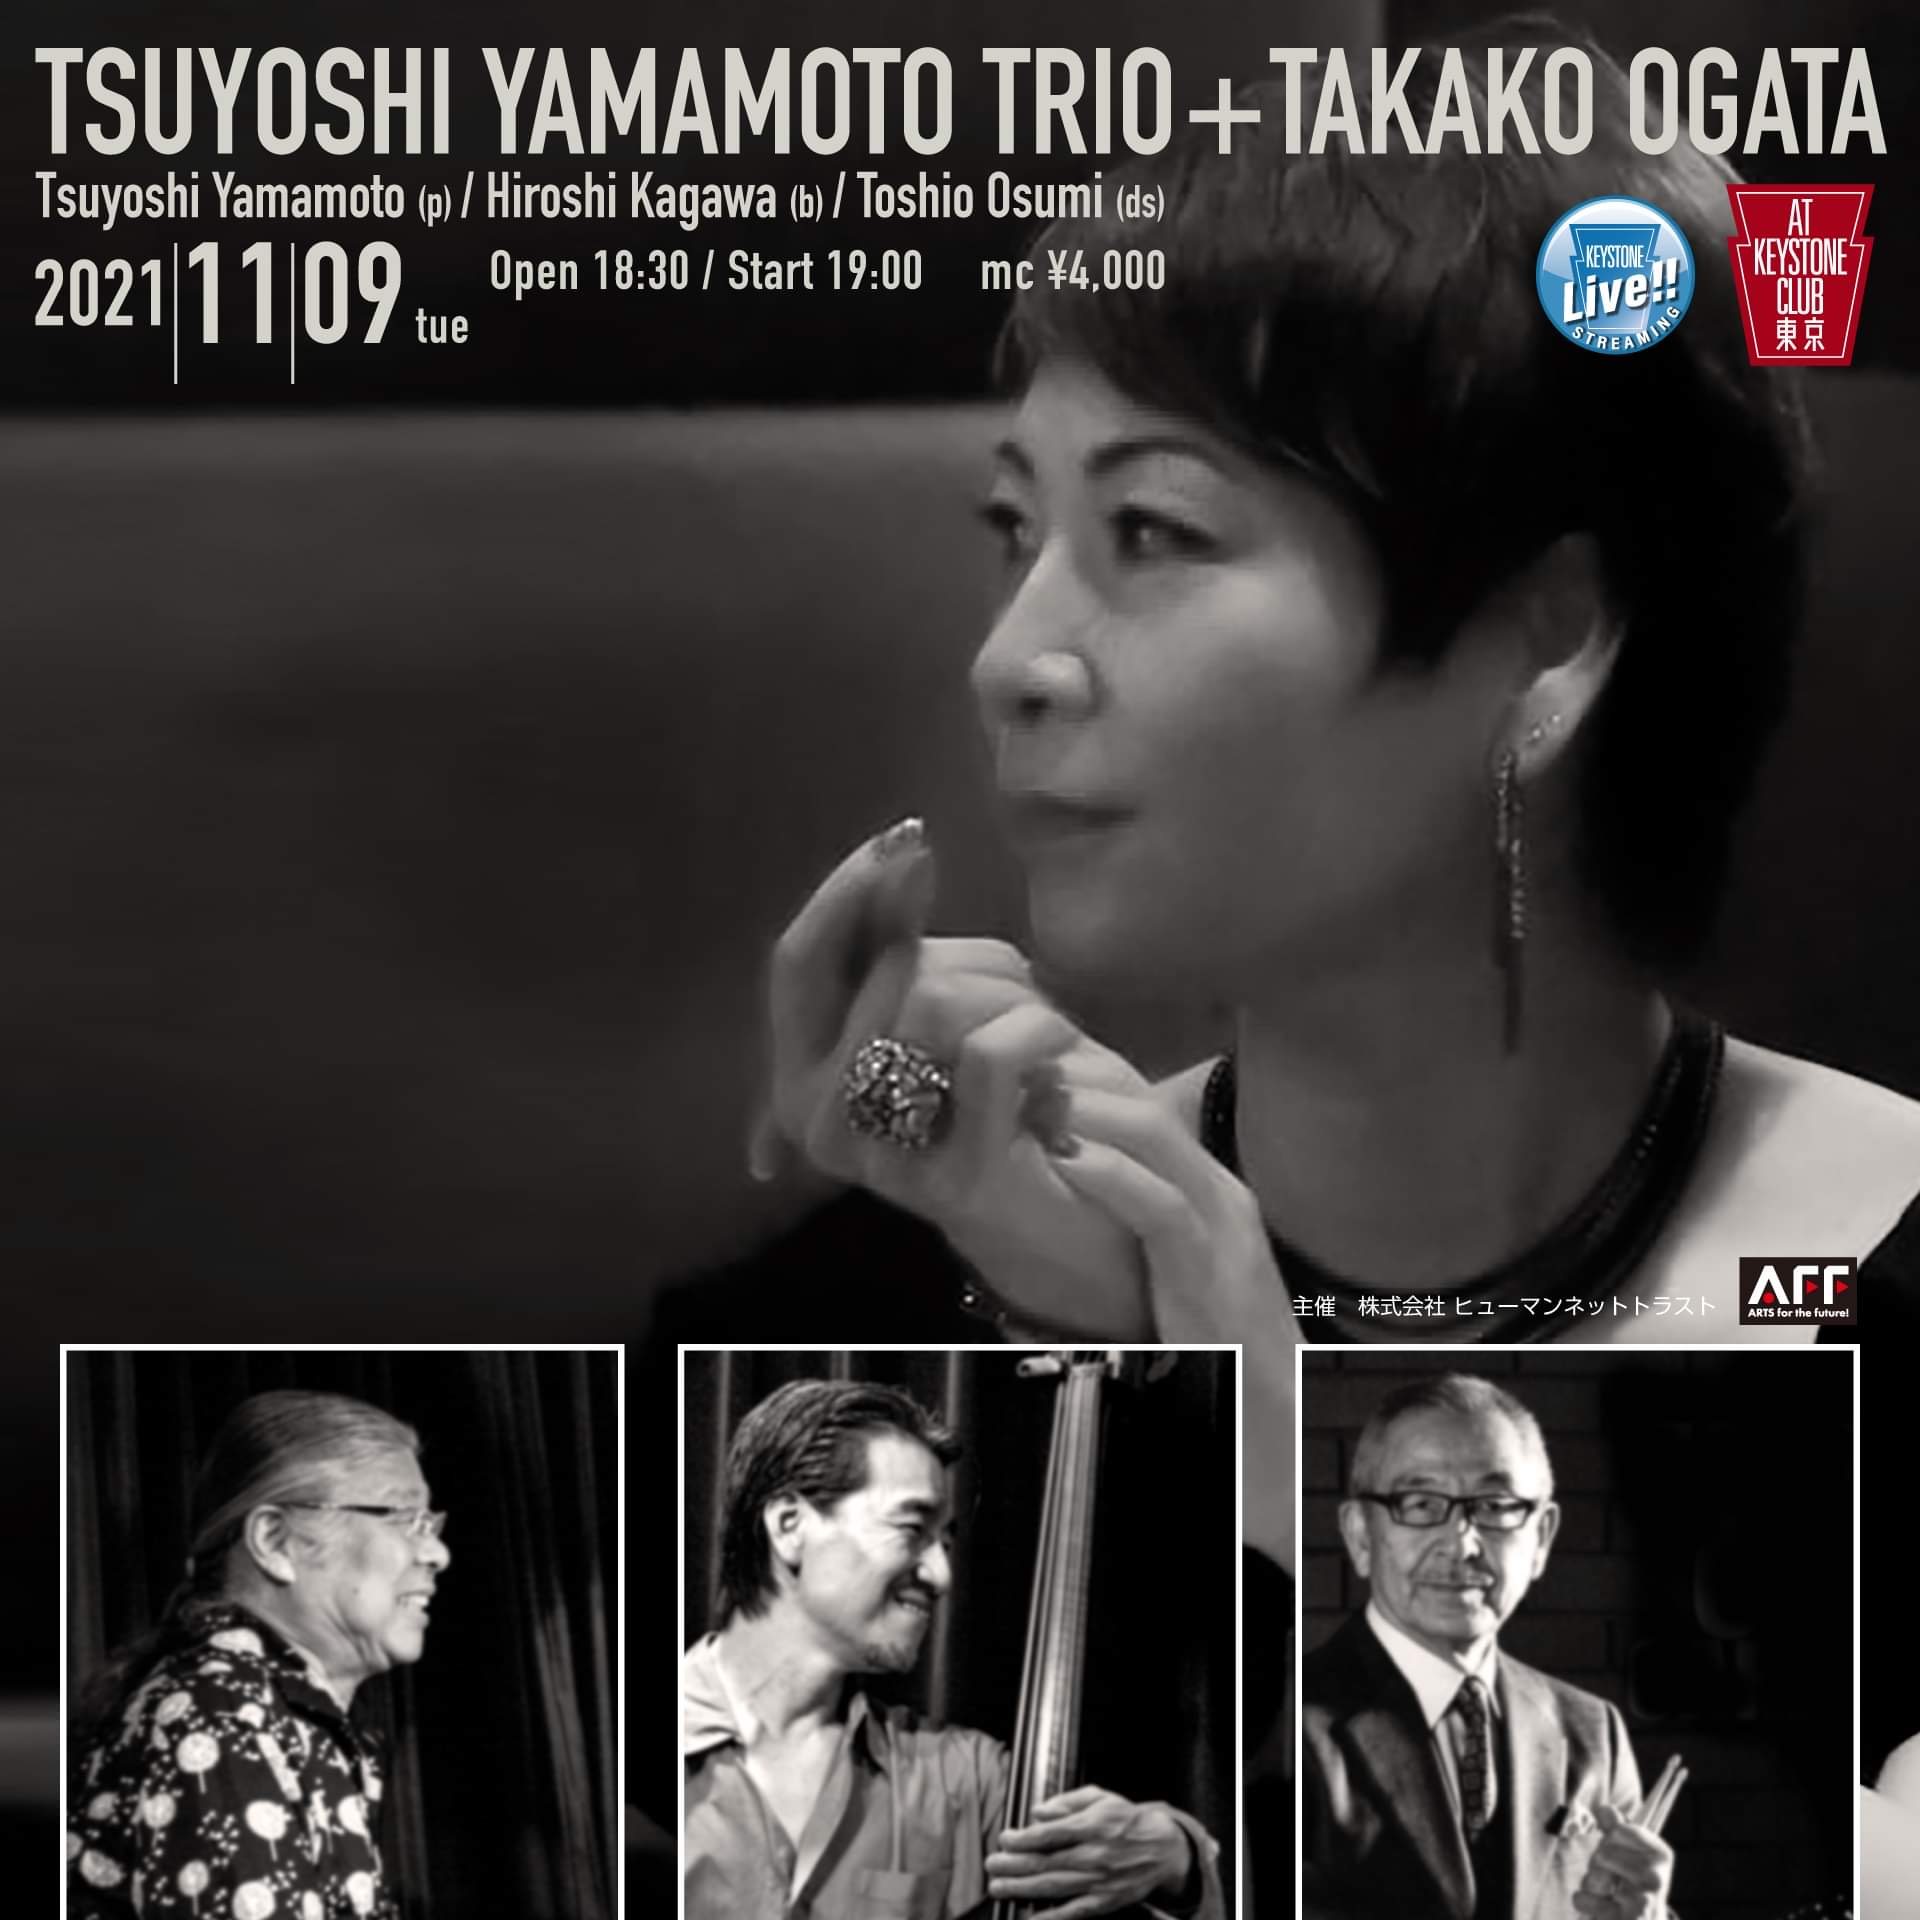 TSUYOSHI YAMAMOTO TRIO + TAKAKO OGATA